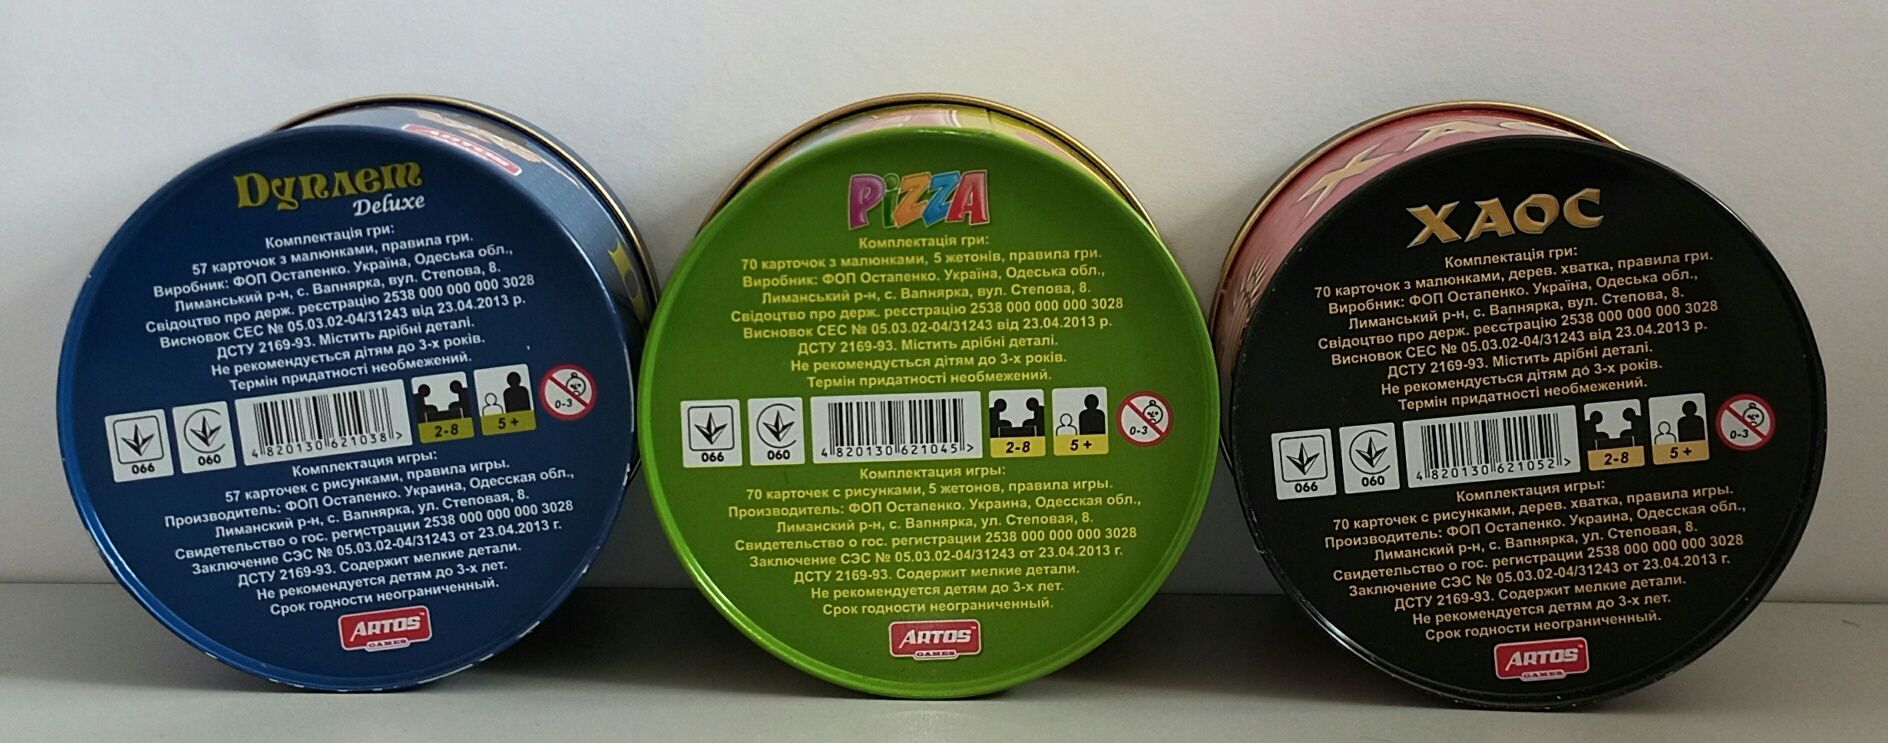 Дуплет Deluxe (Добль), Хаос, Pizza (Пицца) Развлекательная игра 3 вида